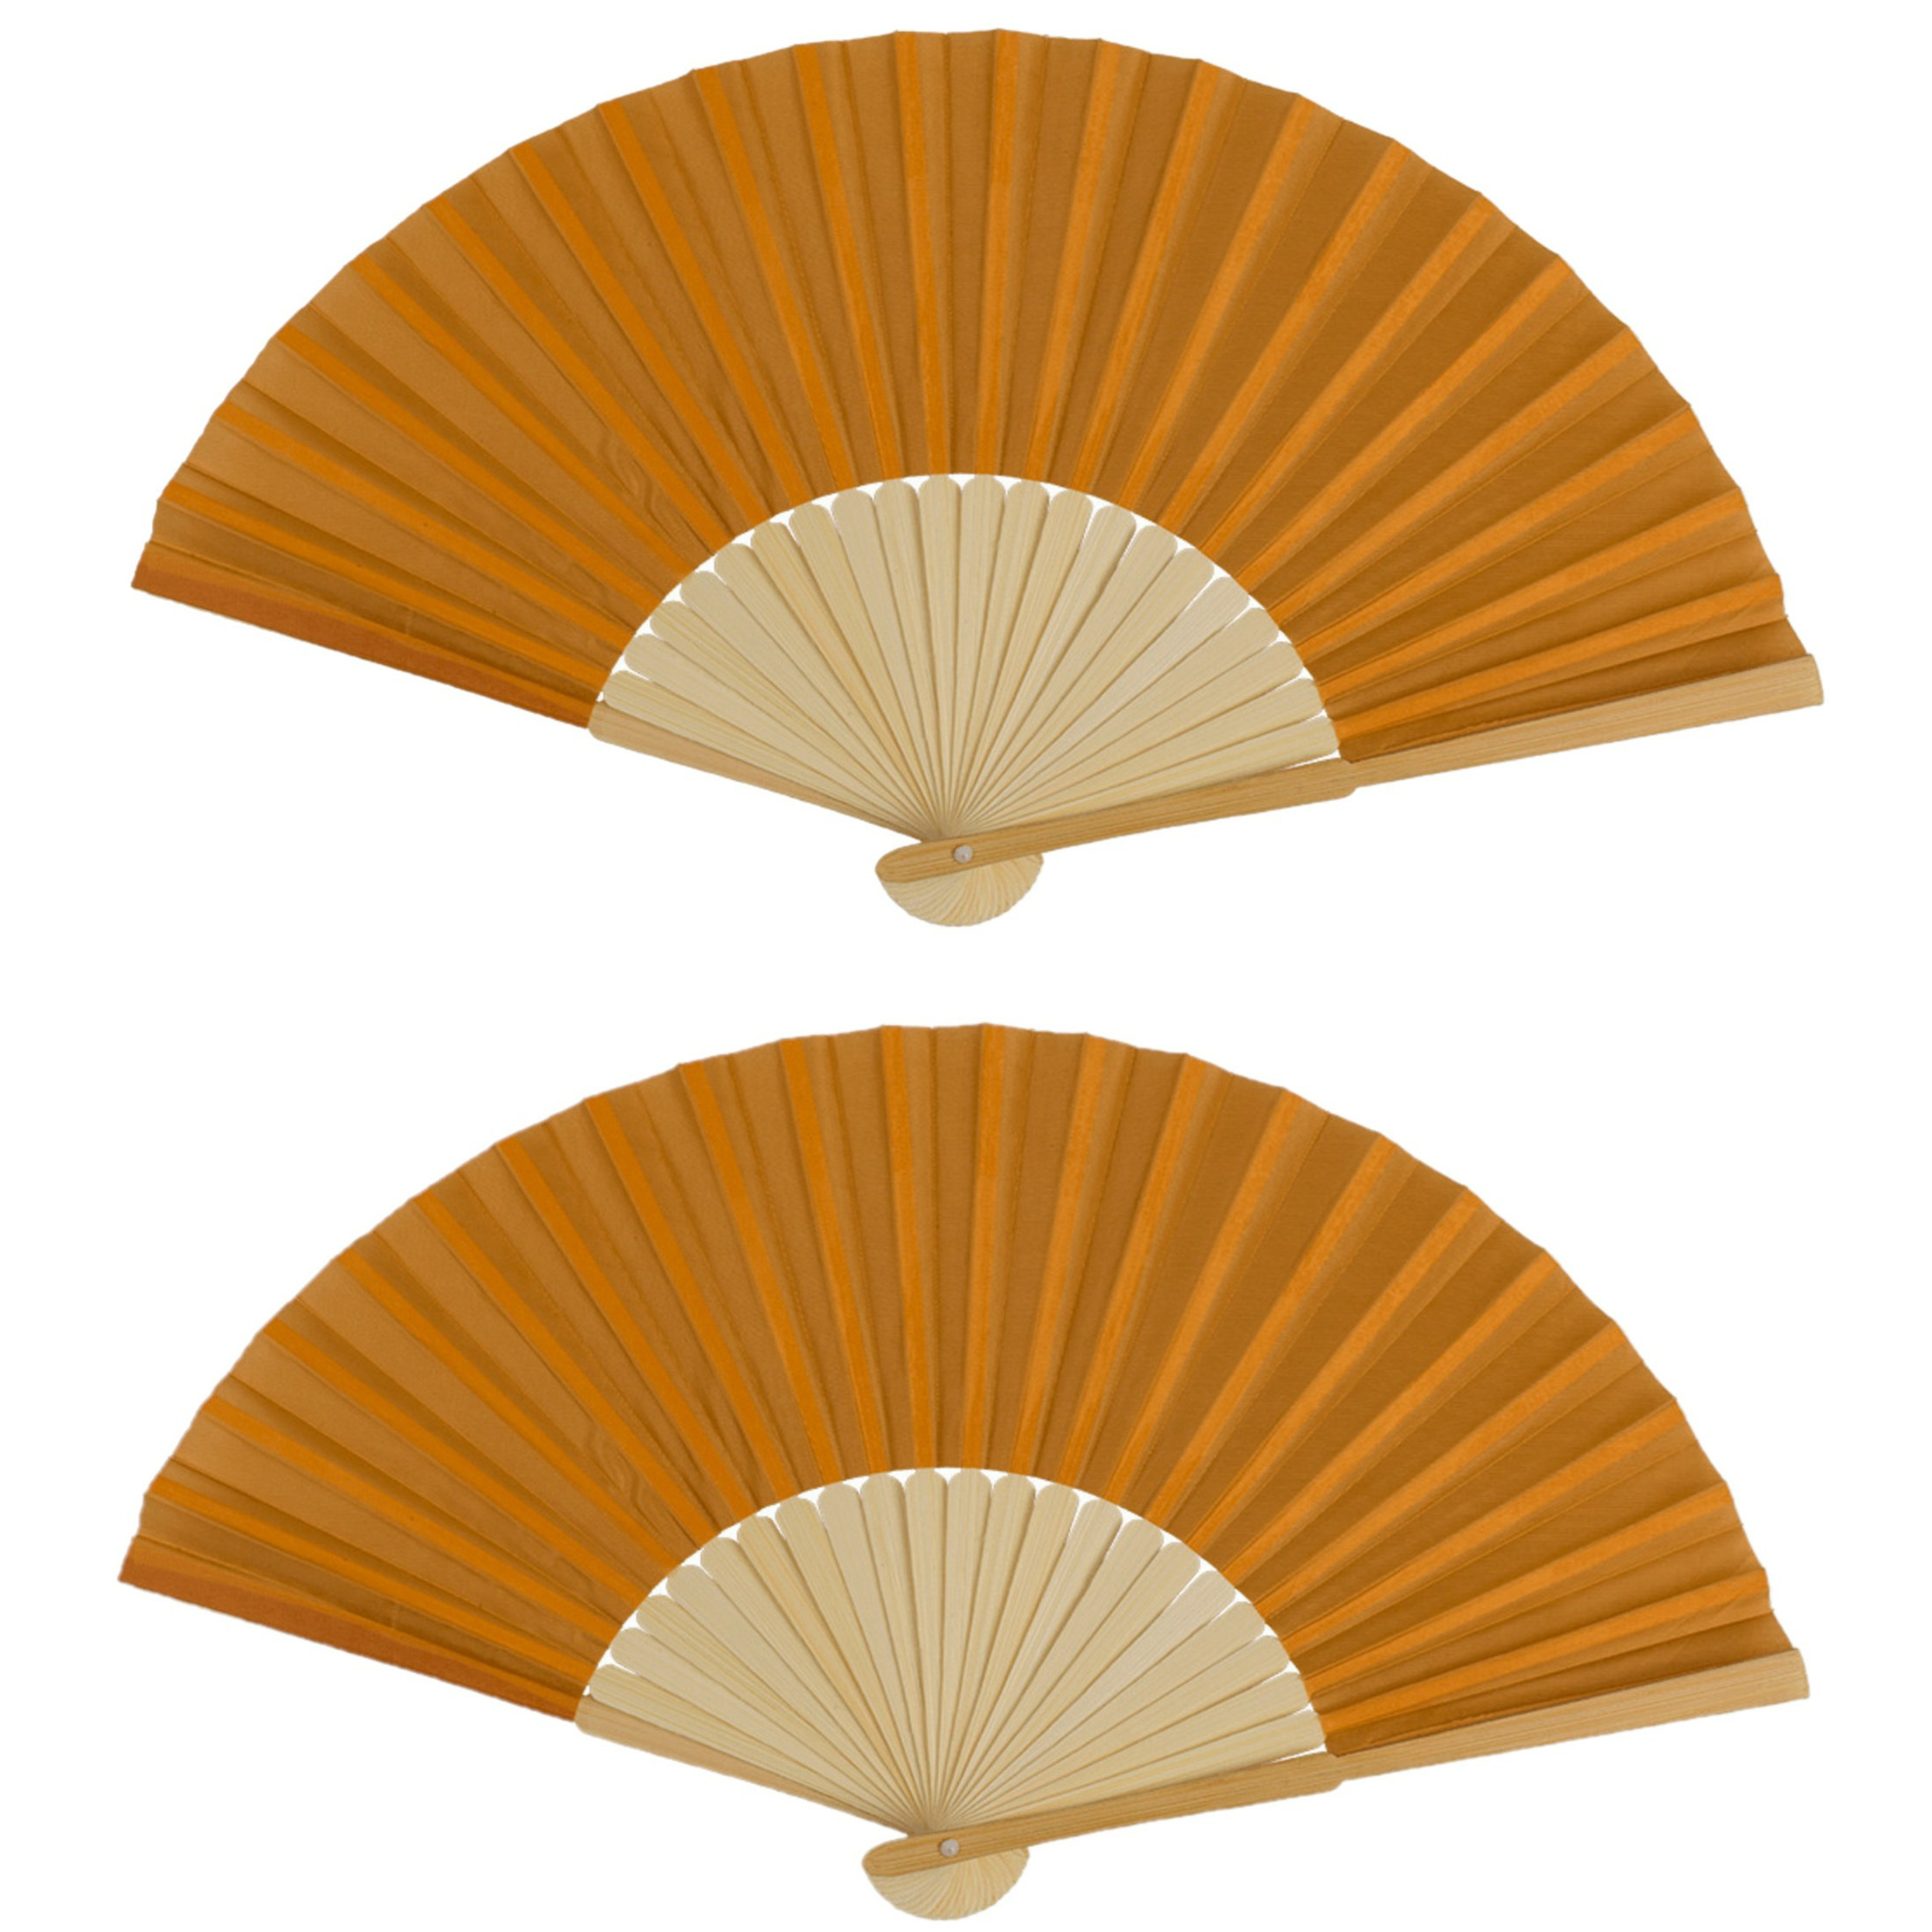 Spaanse handwaaier 2x pastelkleuren cognac bruin bamboe-papier 21 cm